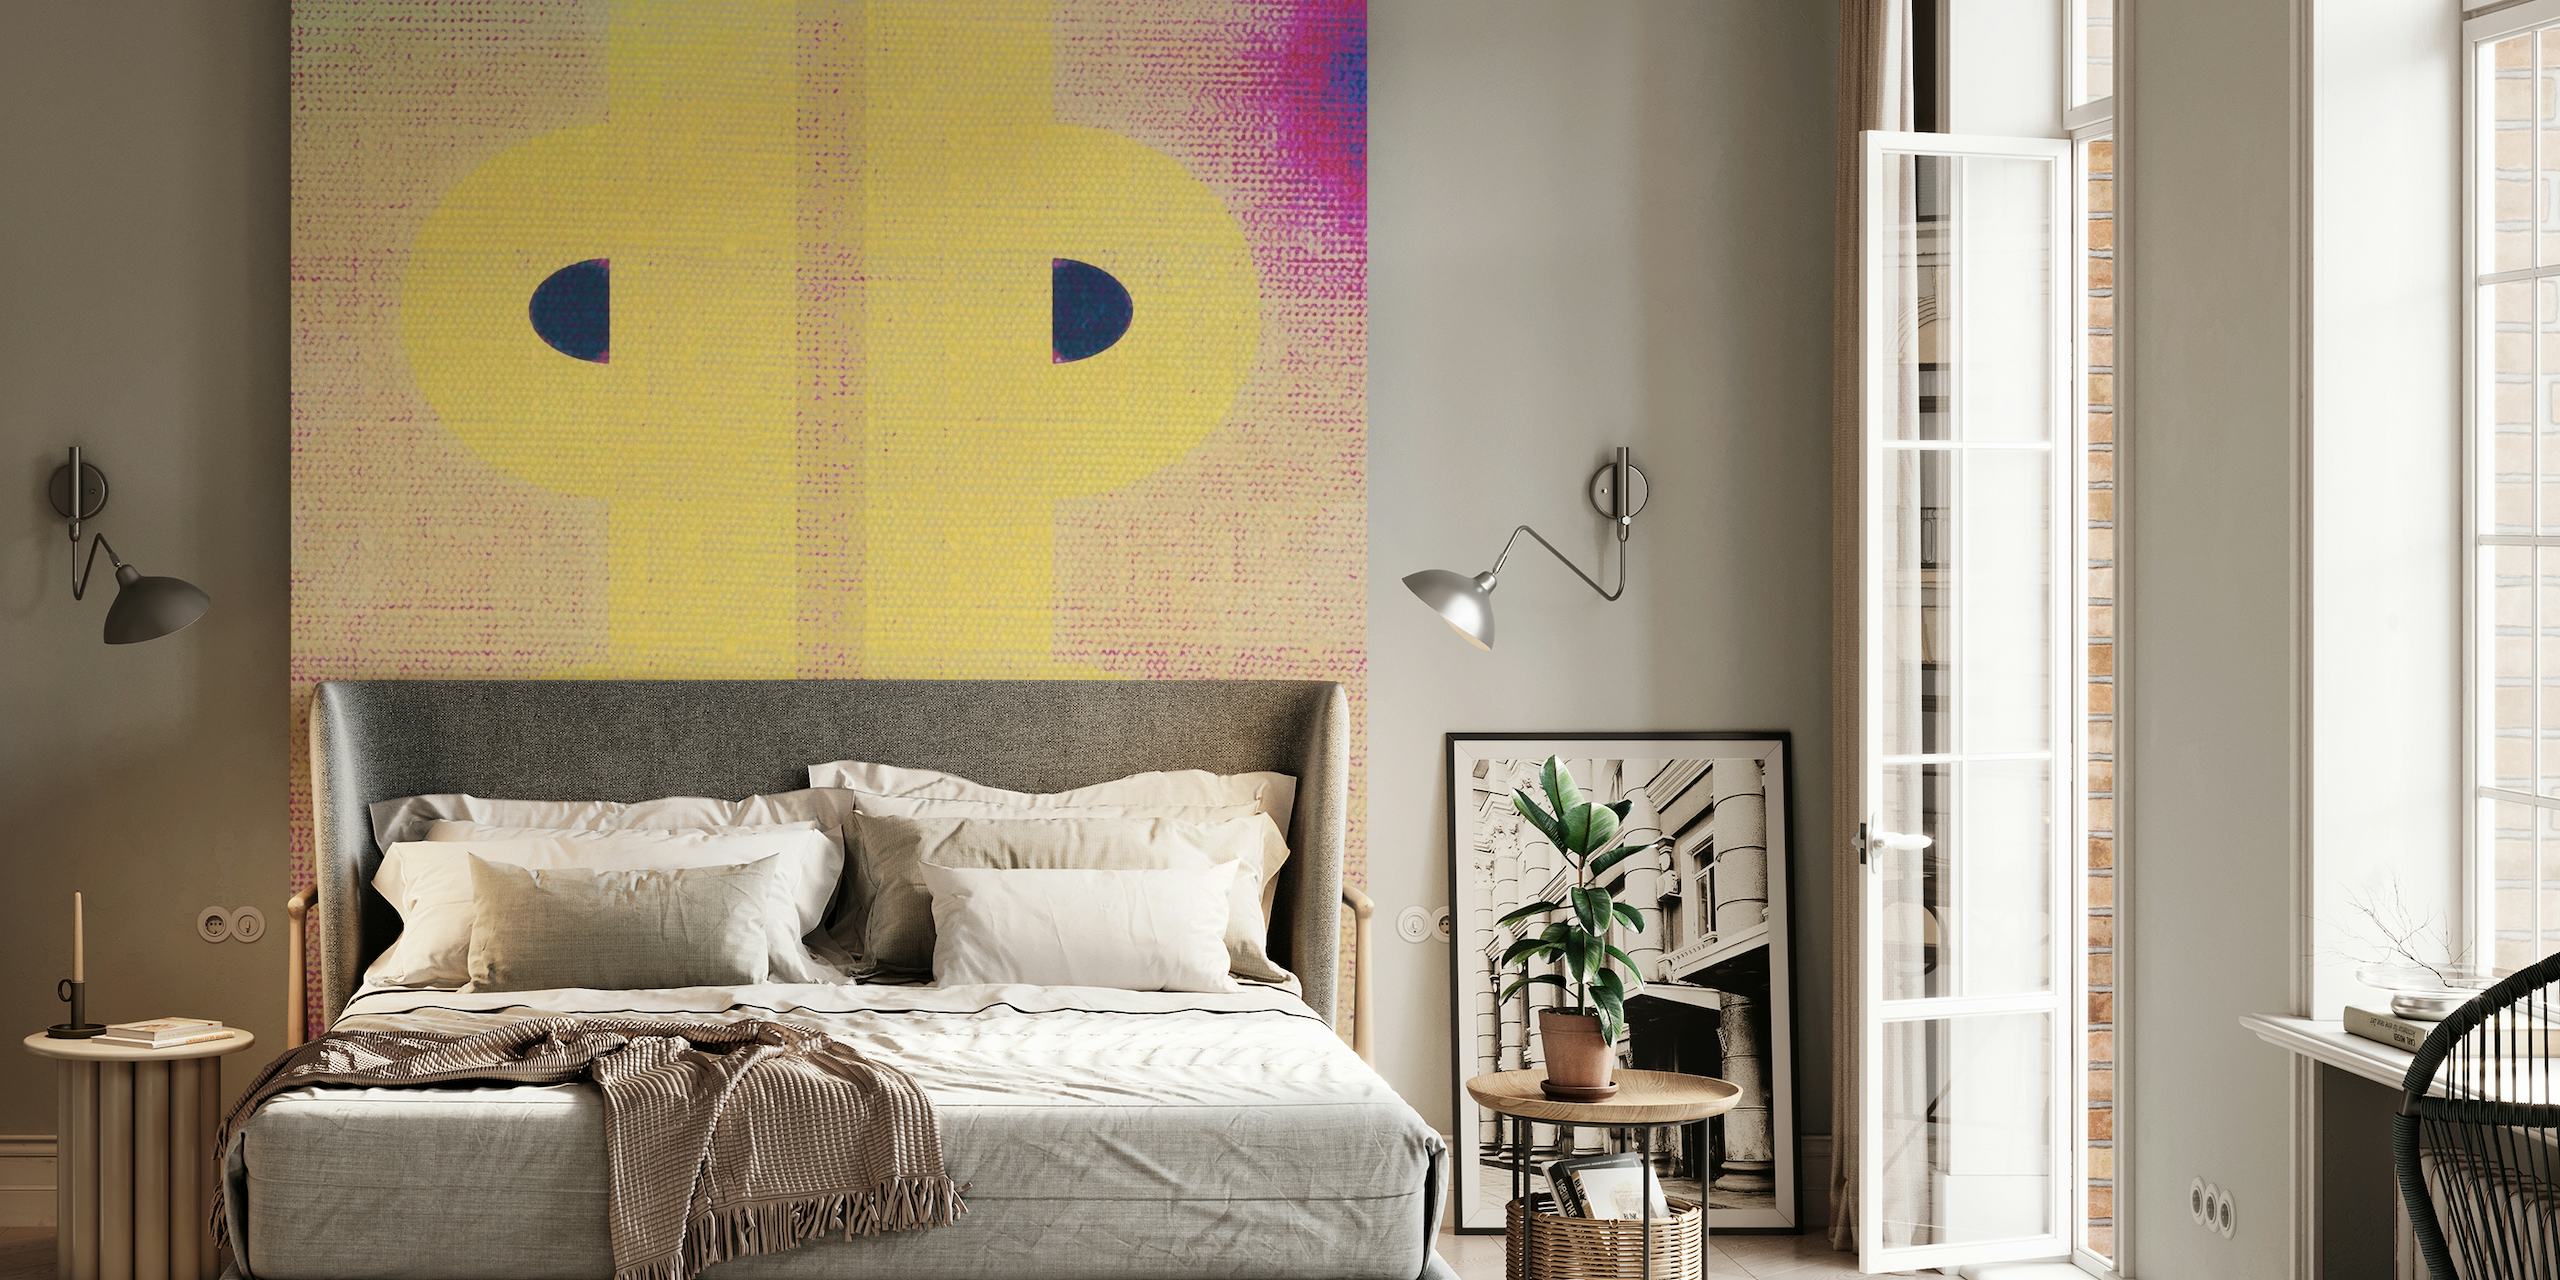 Současná nástěnná malba Abstract 09 s pastelovými odstíny a výraznými tvary